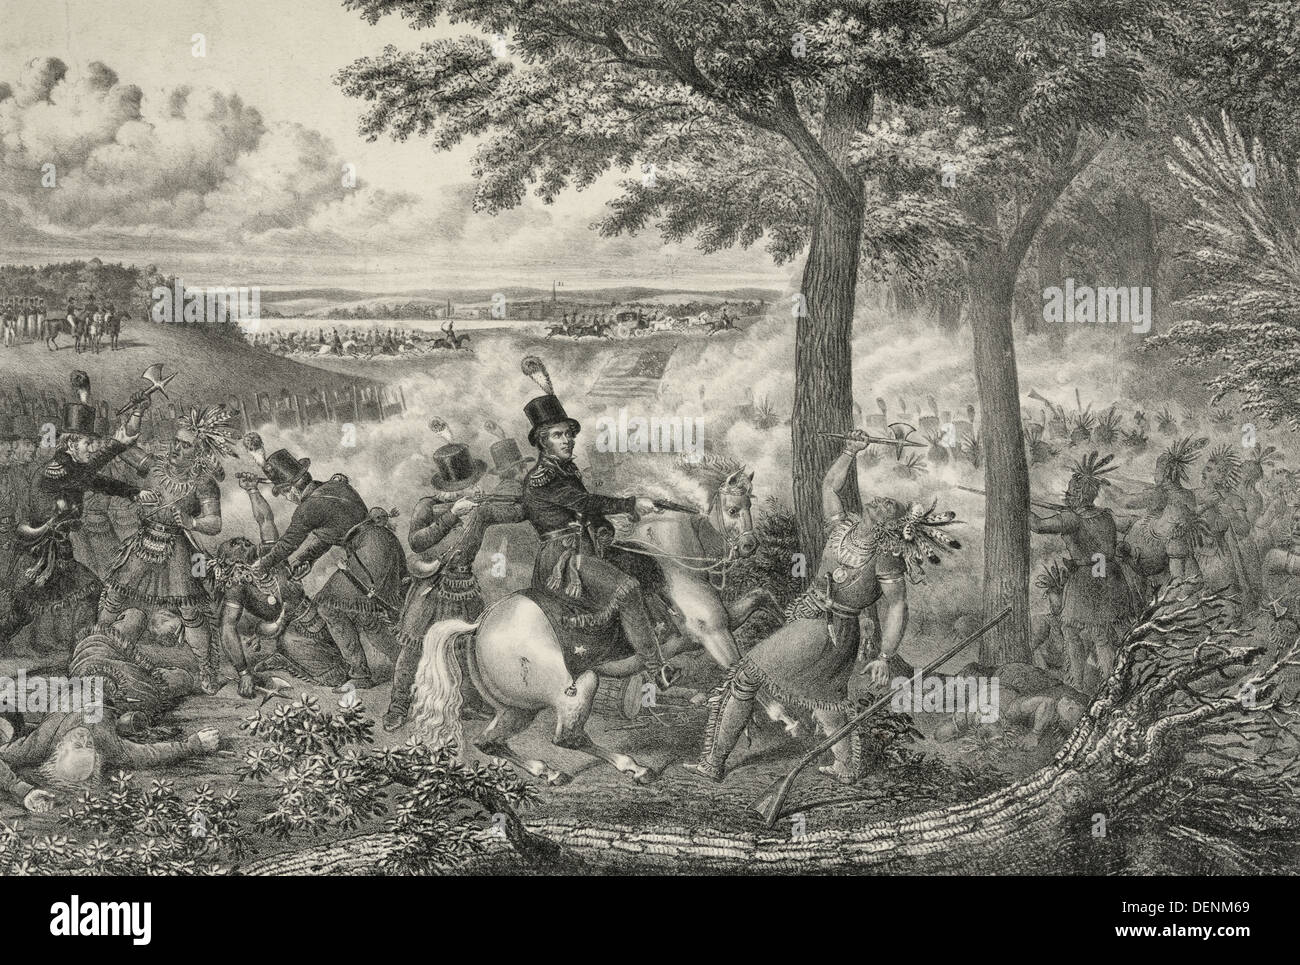 Schlacht von der Themse - American Kräfte kämpfen Tecumseh indische Konföderation. In der Mitte schießt Oberst R. M. Johnson Tecumseh, die seinen Tomahawk erhoben hat. 5. Oktober 1813 Stockfoto